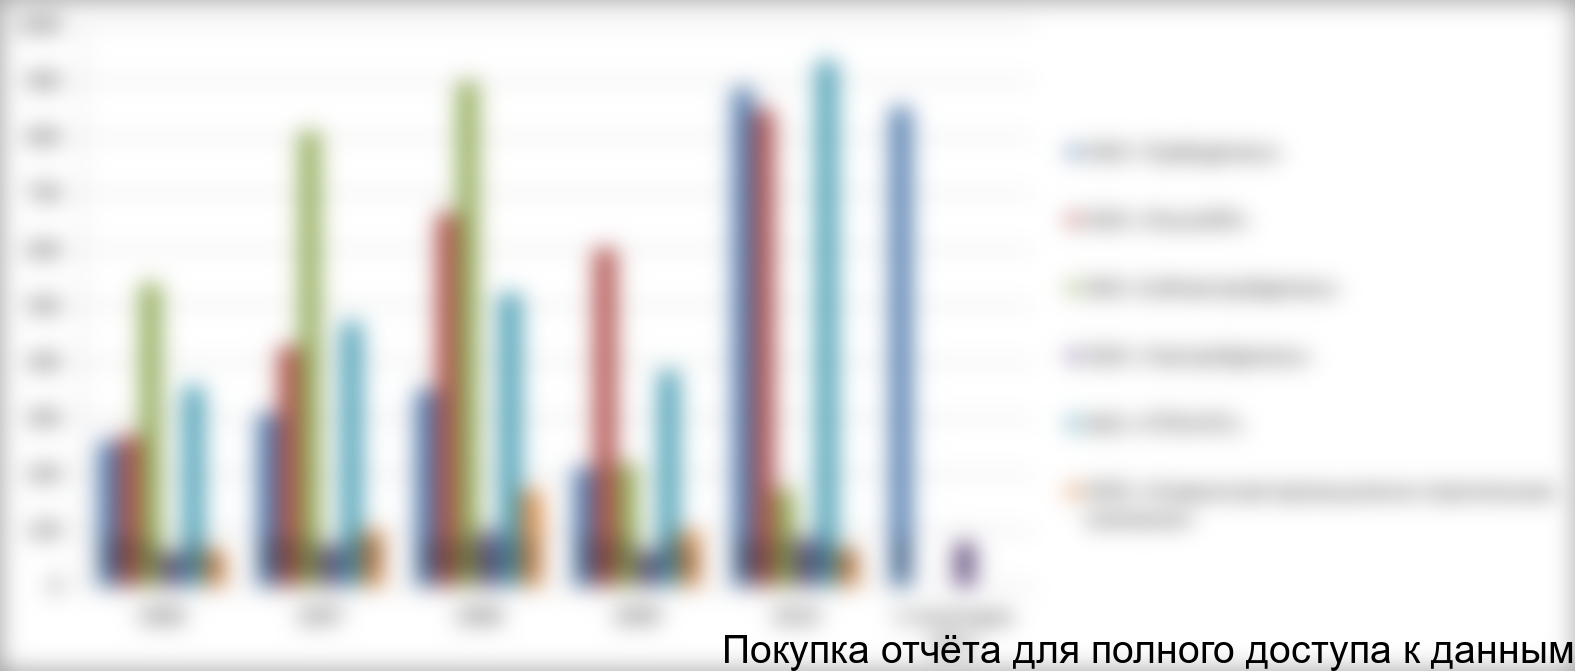 Производство СДТ по ГОСТ в разрезе исследуемых компаний в 2006-6 месяцев 2011 гг., млн. руб.